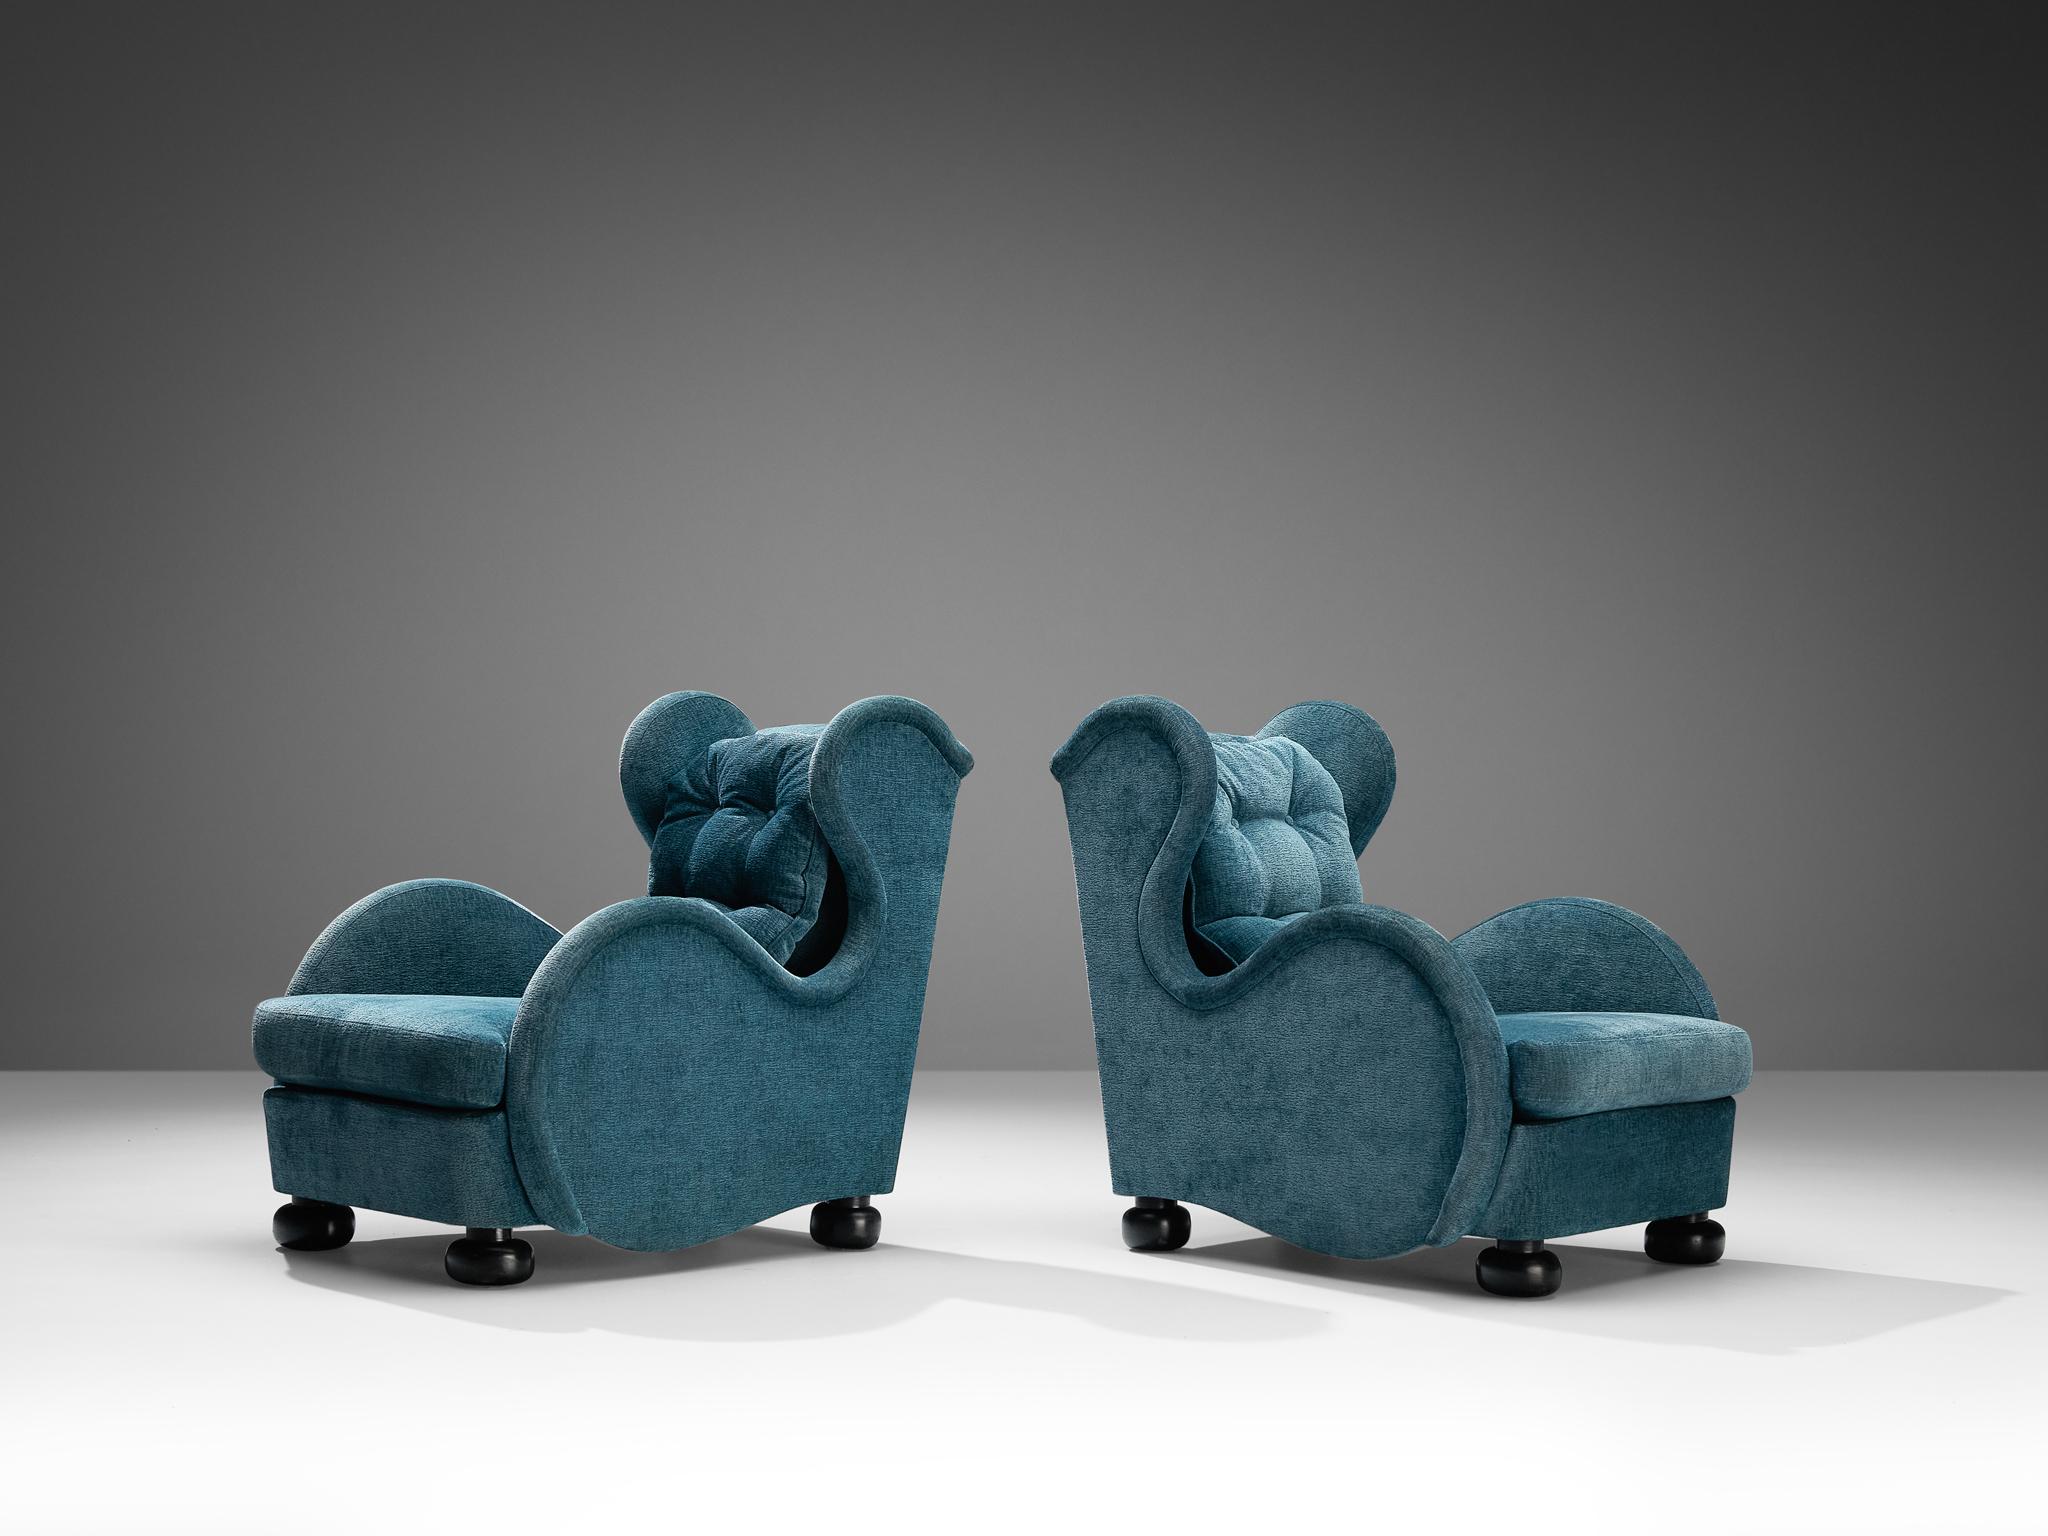 René Drouet, paire de chaises longues, velours, bois laqué, France, années 1940

Ces magnifiques fauteuils de salon du décorateur français René Drouet sont la quintessence de l'Art déco tardif des années 1940. Ce fauteuil se distingue par ses lignes